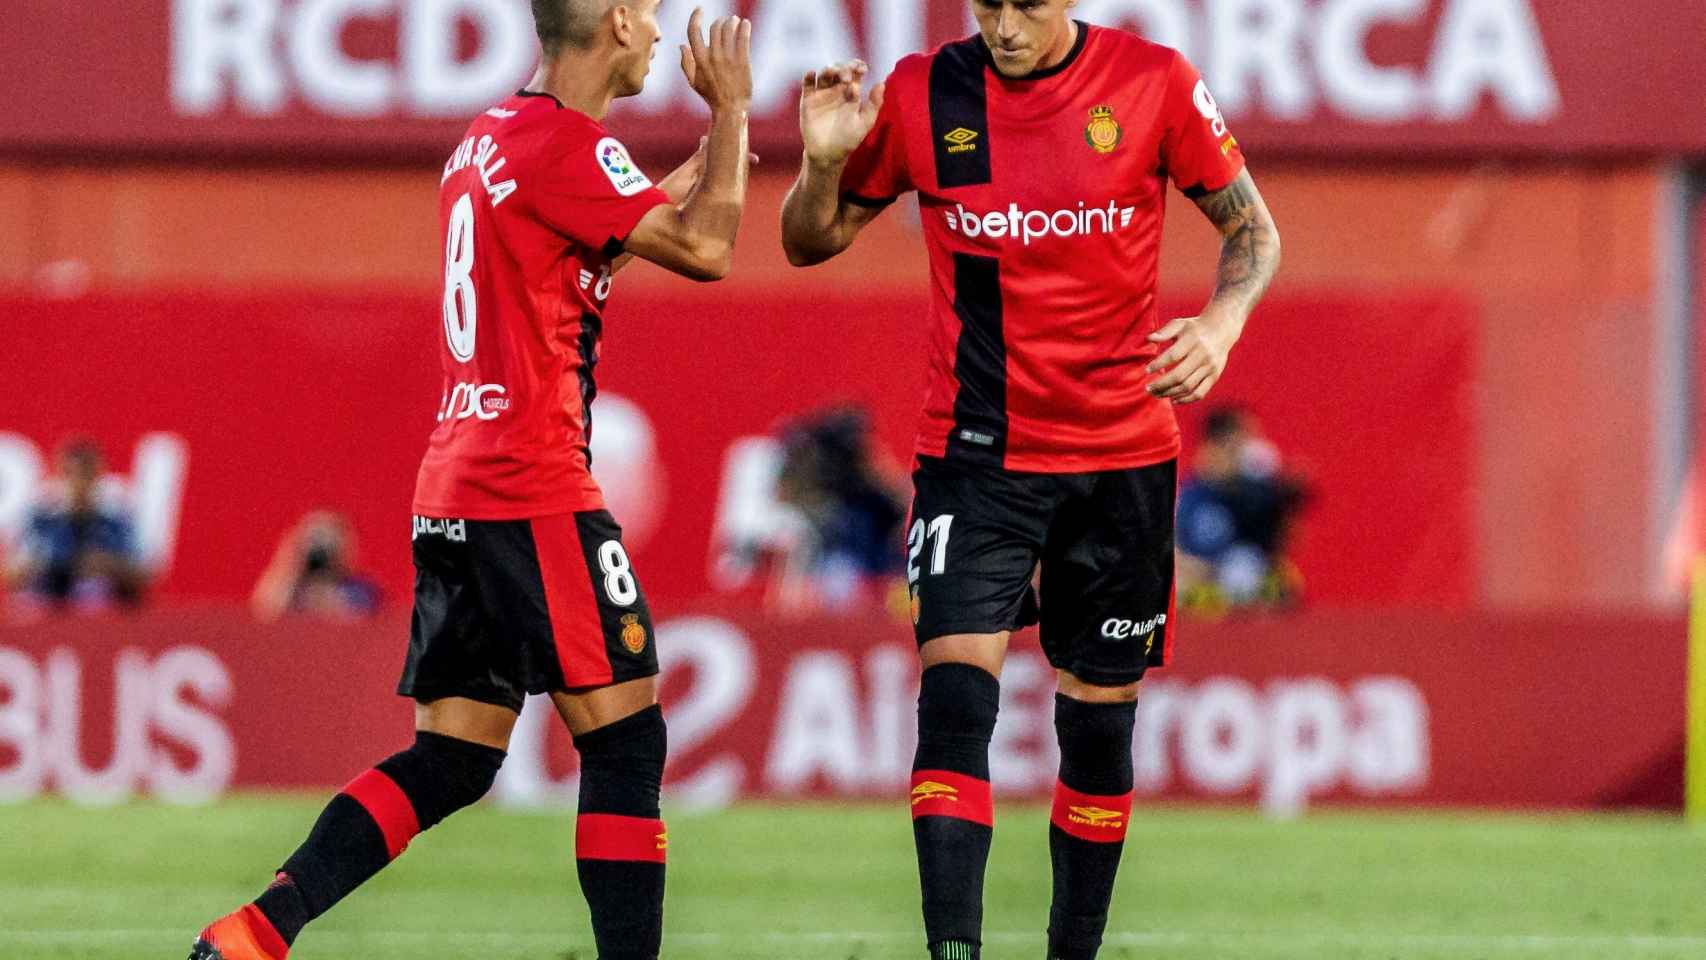 El Mallorca remonta al Deportivo y es equipo de Primera División